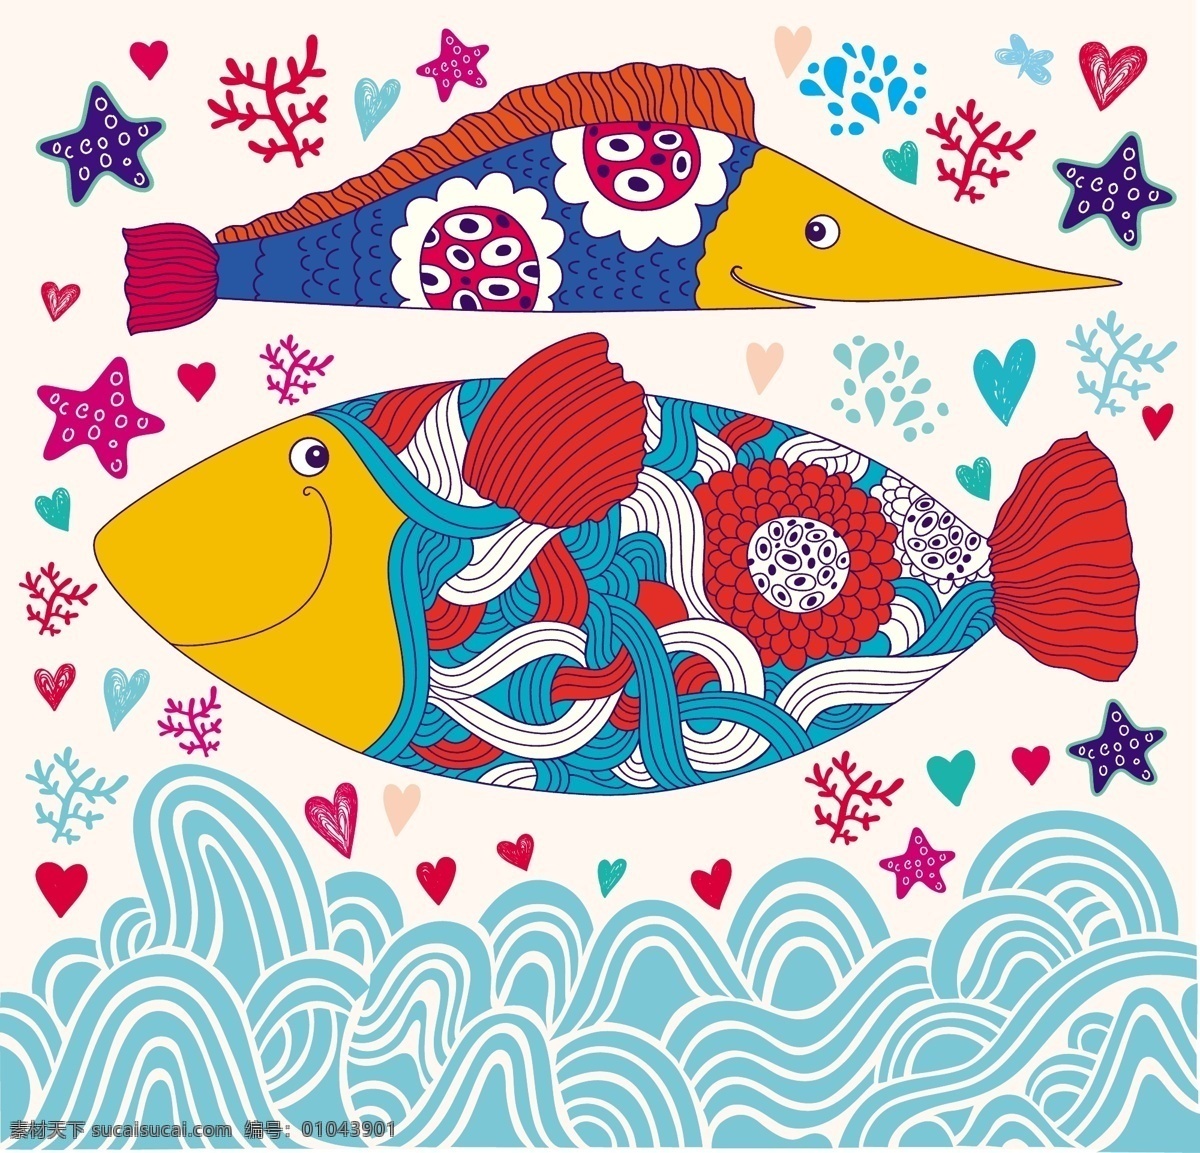 卡通海底鱼 卡通鱼 卡通动物 卡通鱼类 各种鱼 cdr鱼 绘画鱼 手绘鱼 海洋生物 卡通 卡通素材 鱼类素材 漫画鱼 可爱鱼 鱼 小丑鱼 海洋鱼